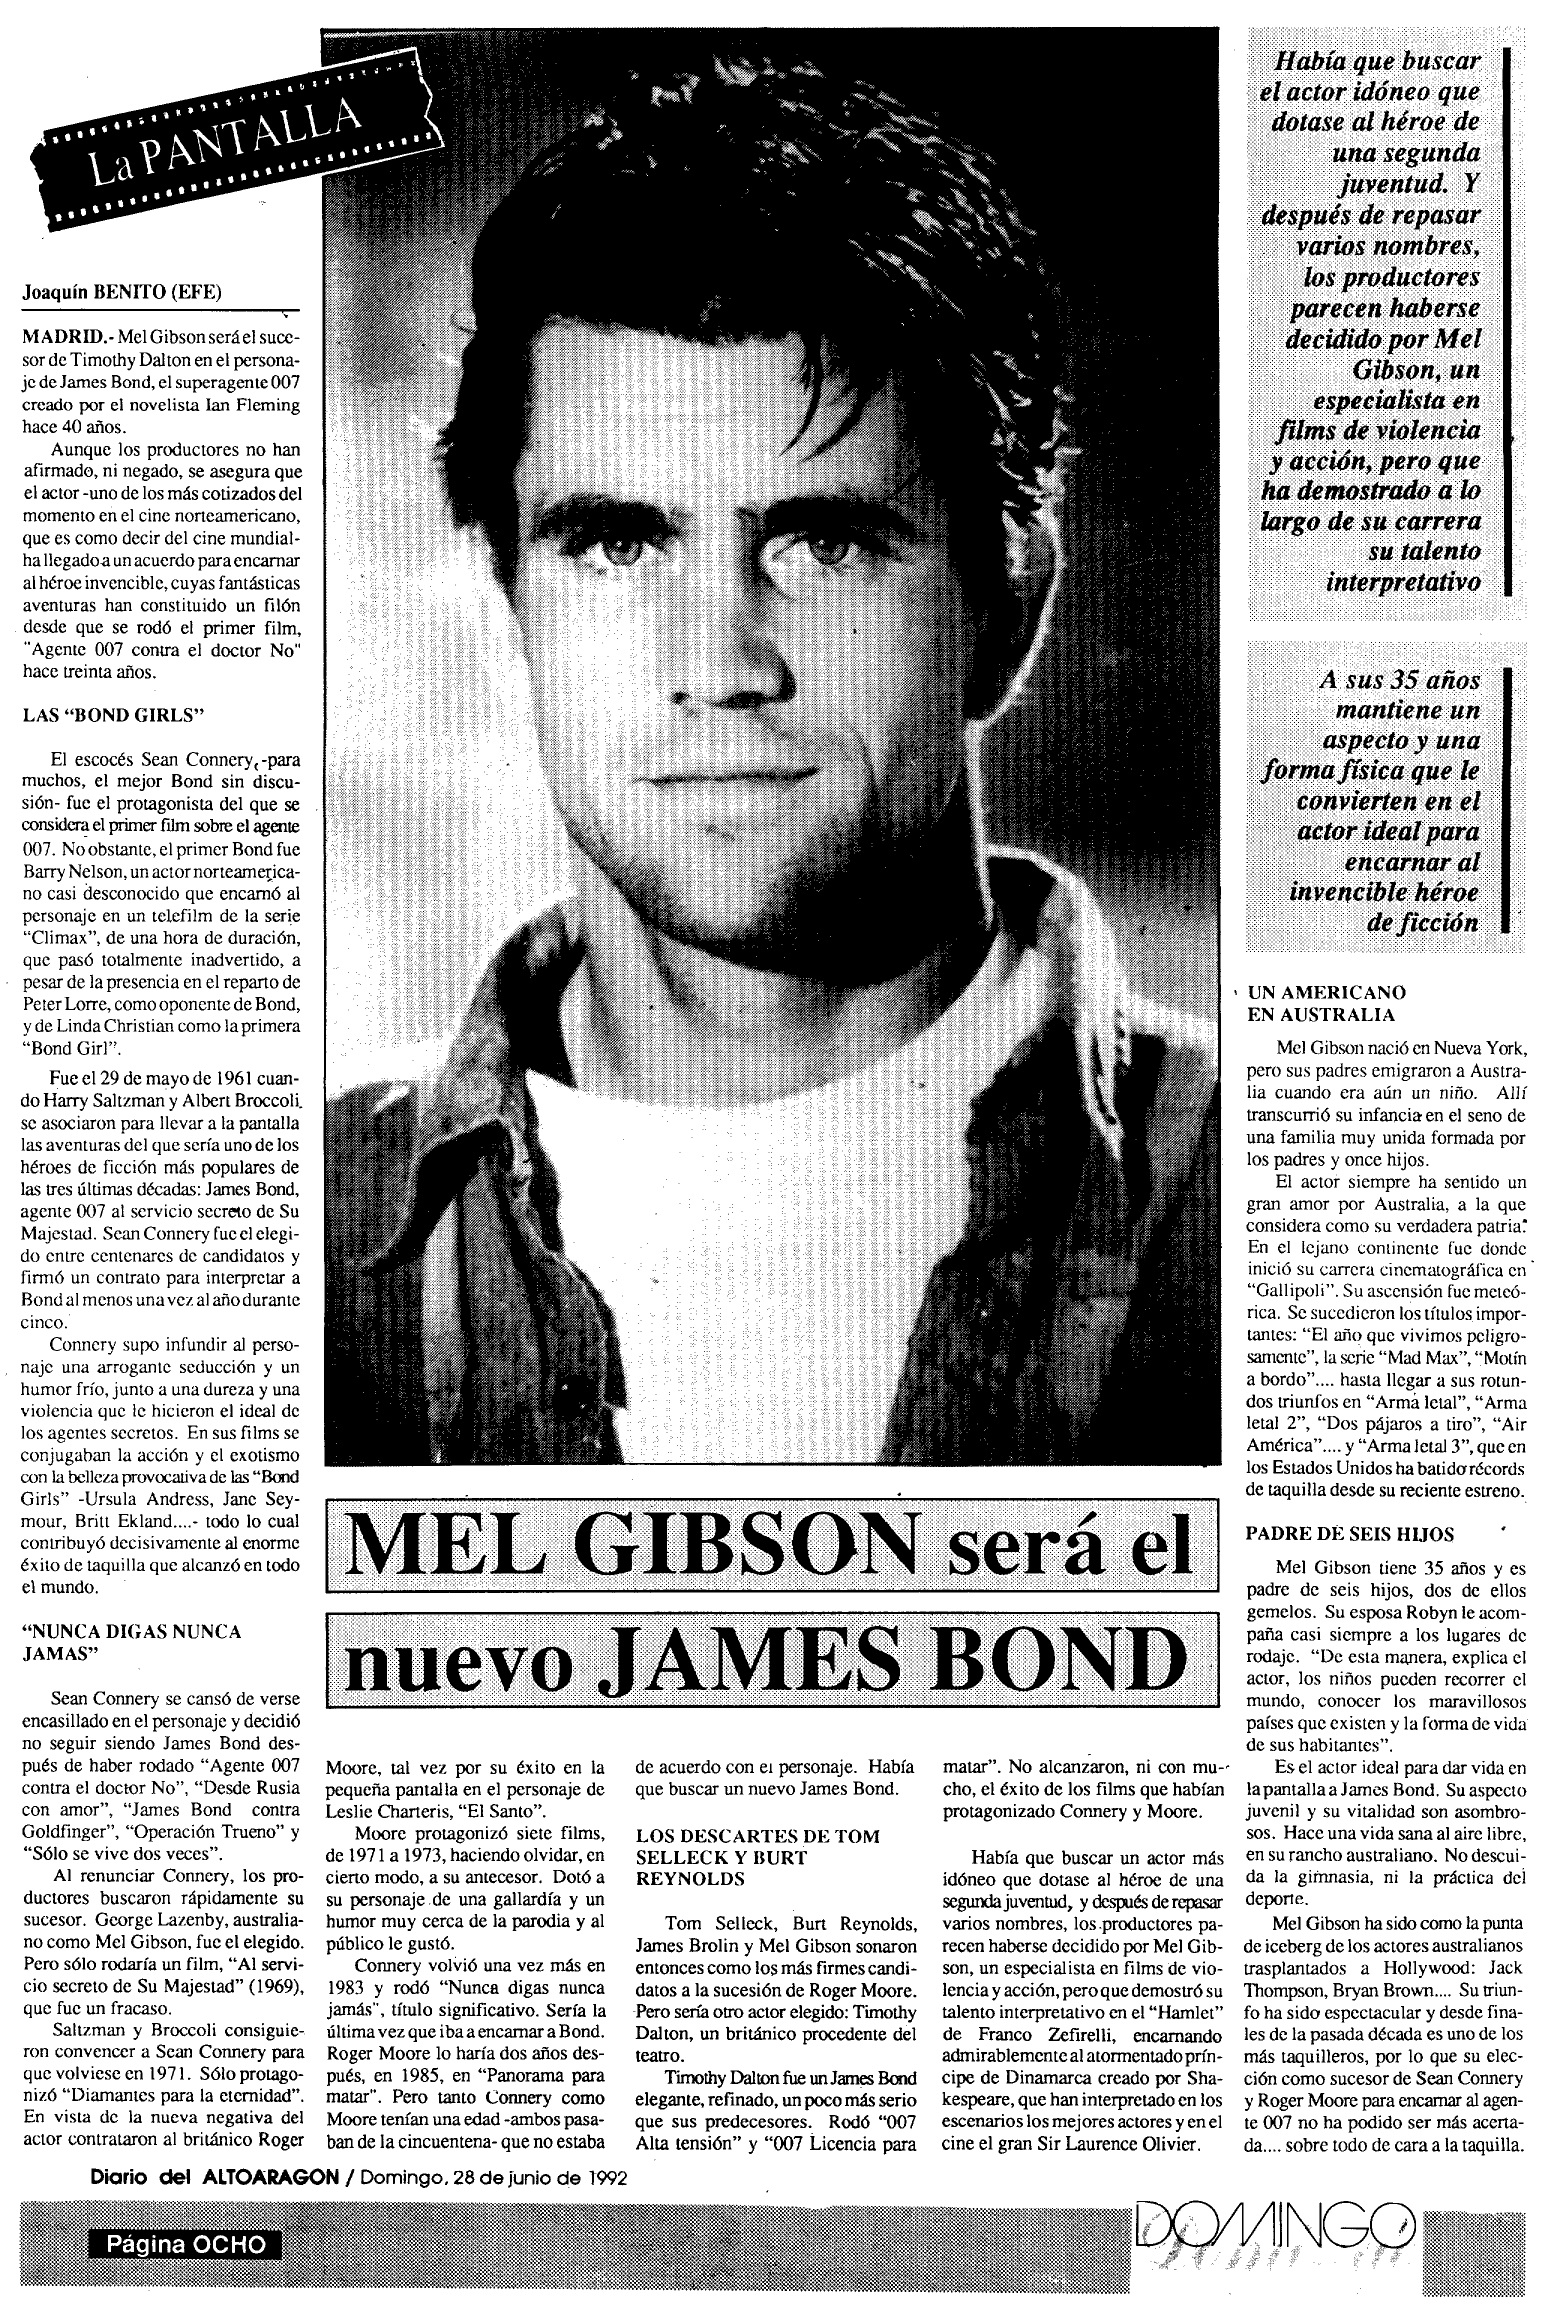 17 1992 06 28 Diario del Alto Aragon Huesca 26 Mel Gibson